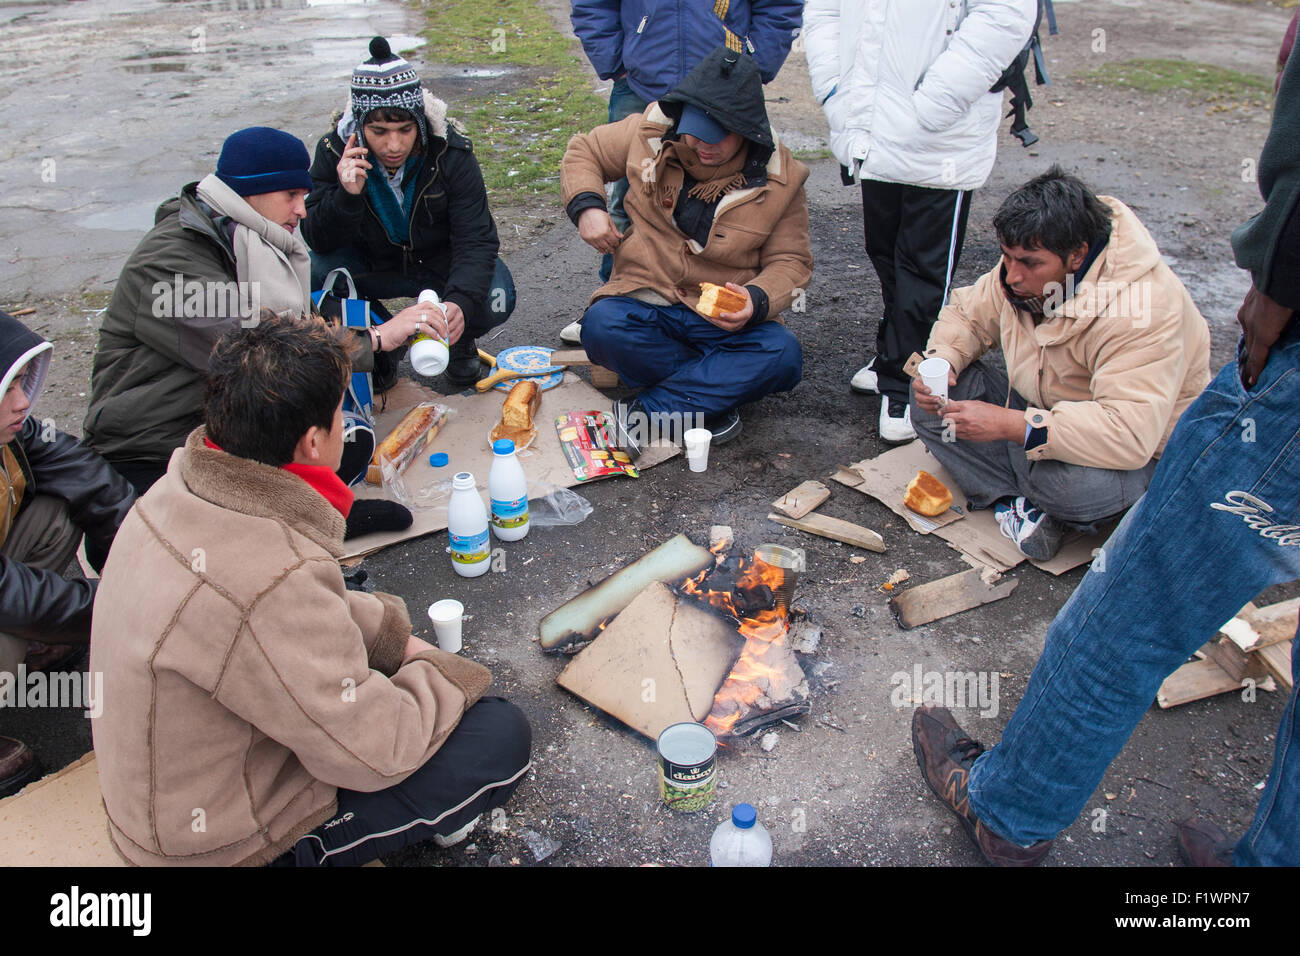 Petit-déjeuner partage des immigrants illégaux à Calais, France Banque D'Images